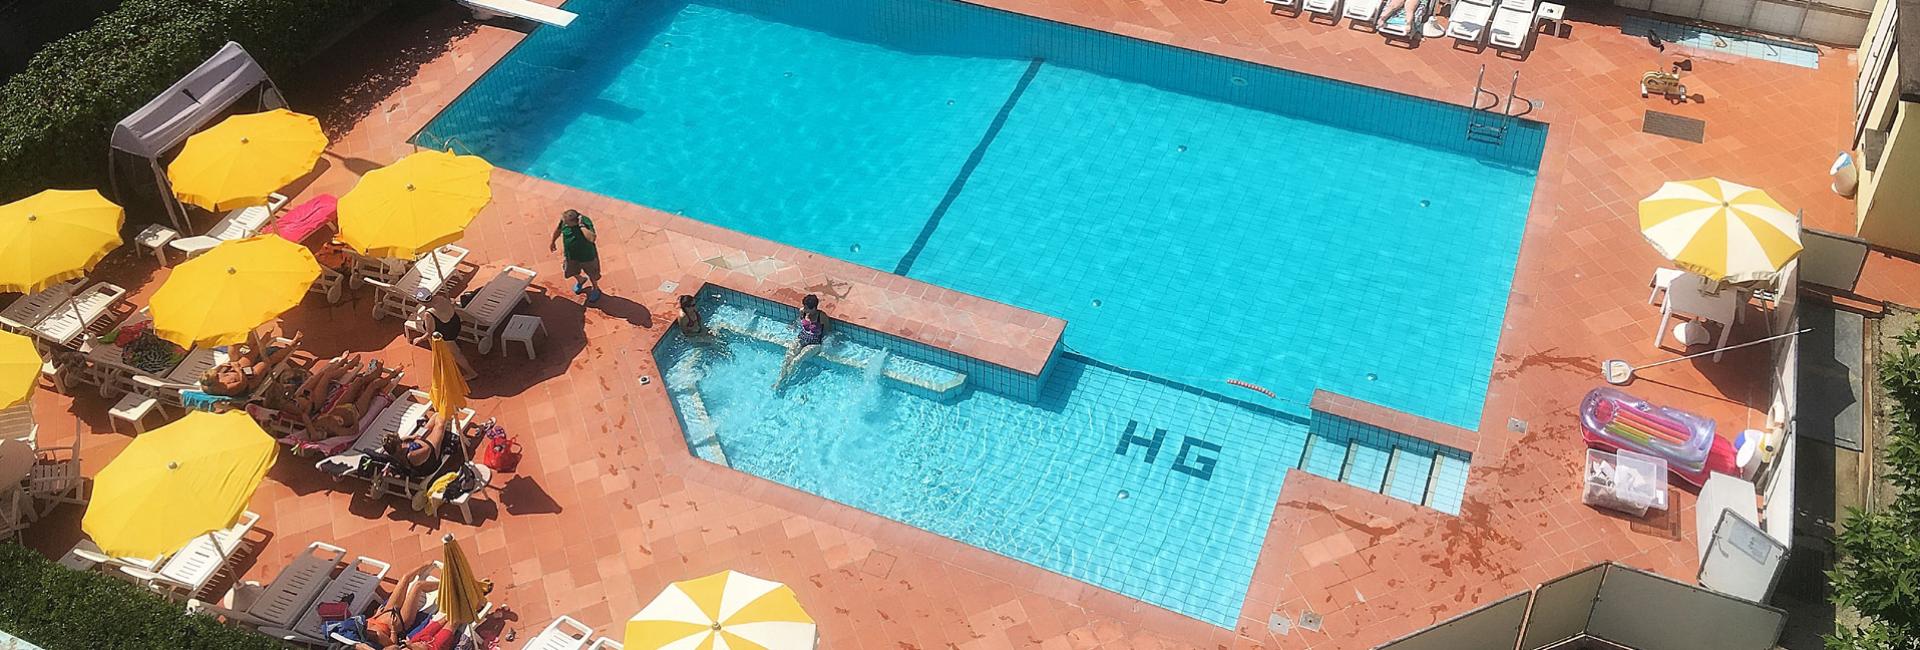 hotelgraziella fr piscine 002